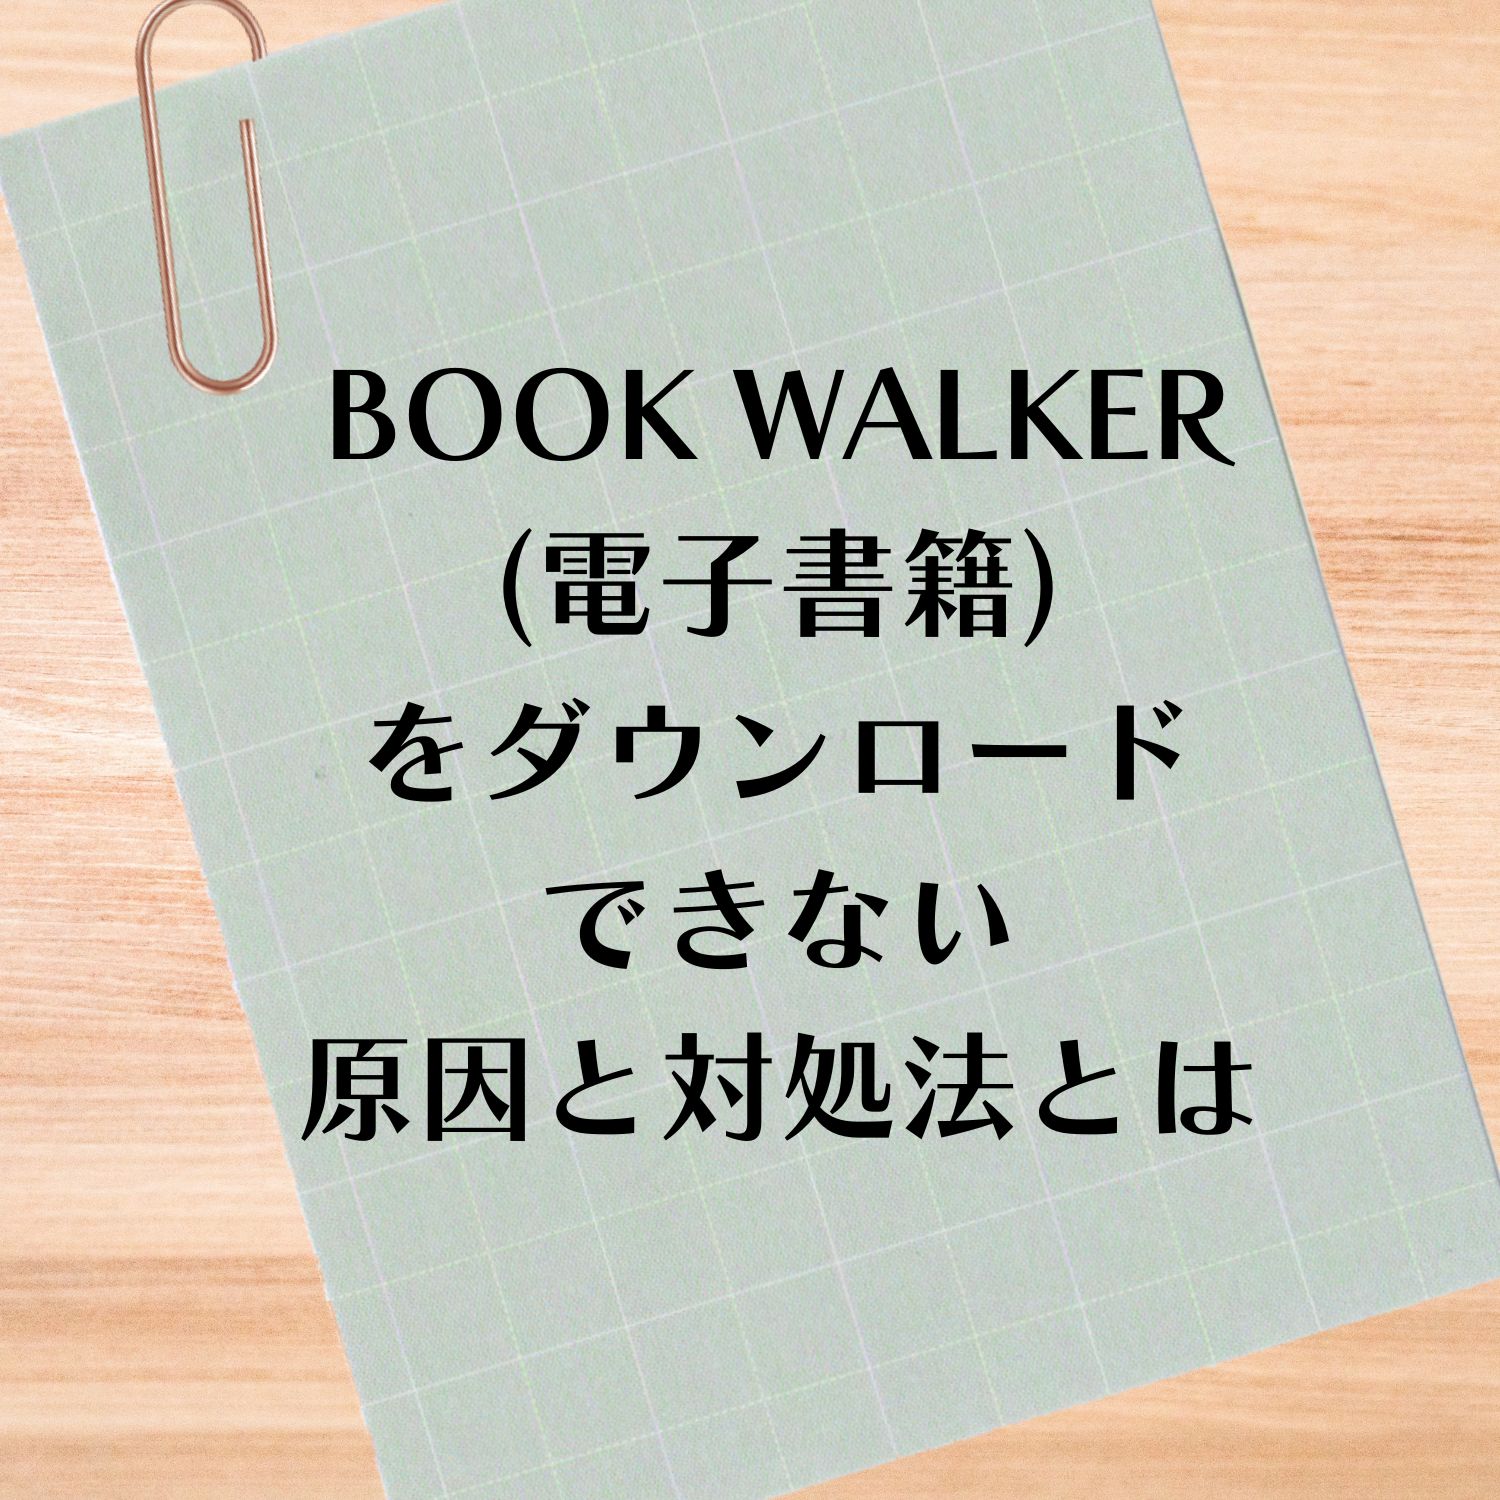 BOOK WALKER (電子書籍）をダウンロードできない原因と対処法とは